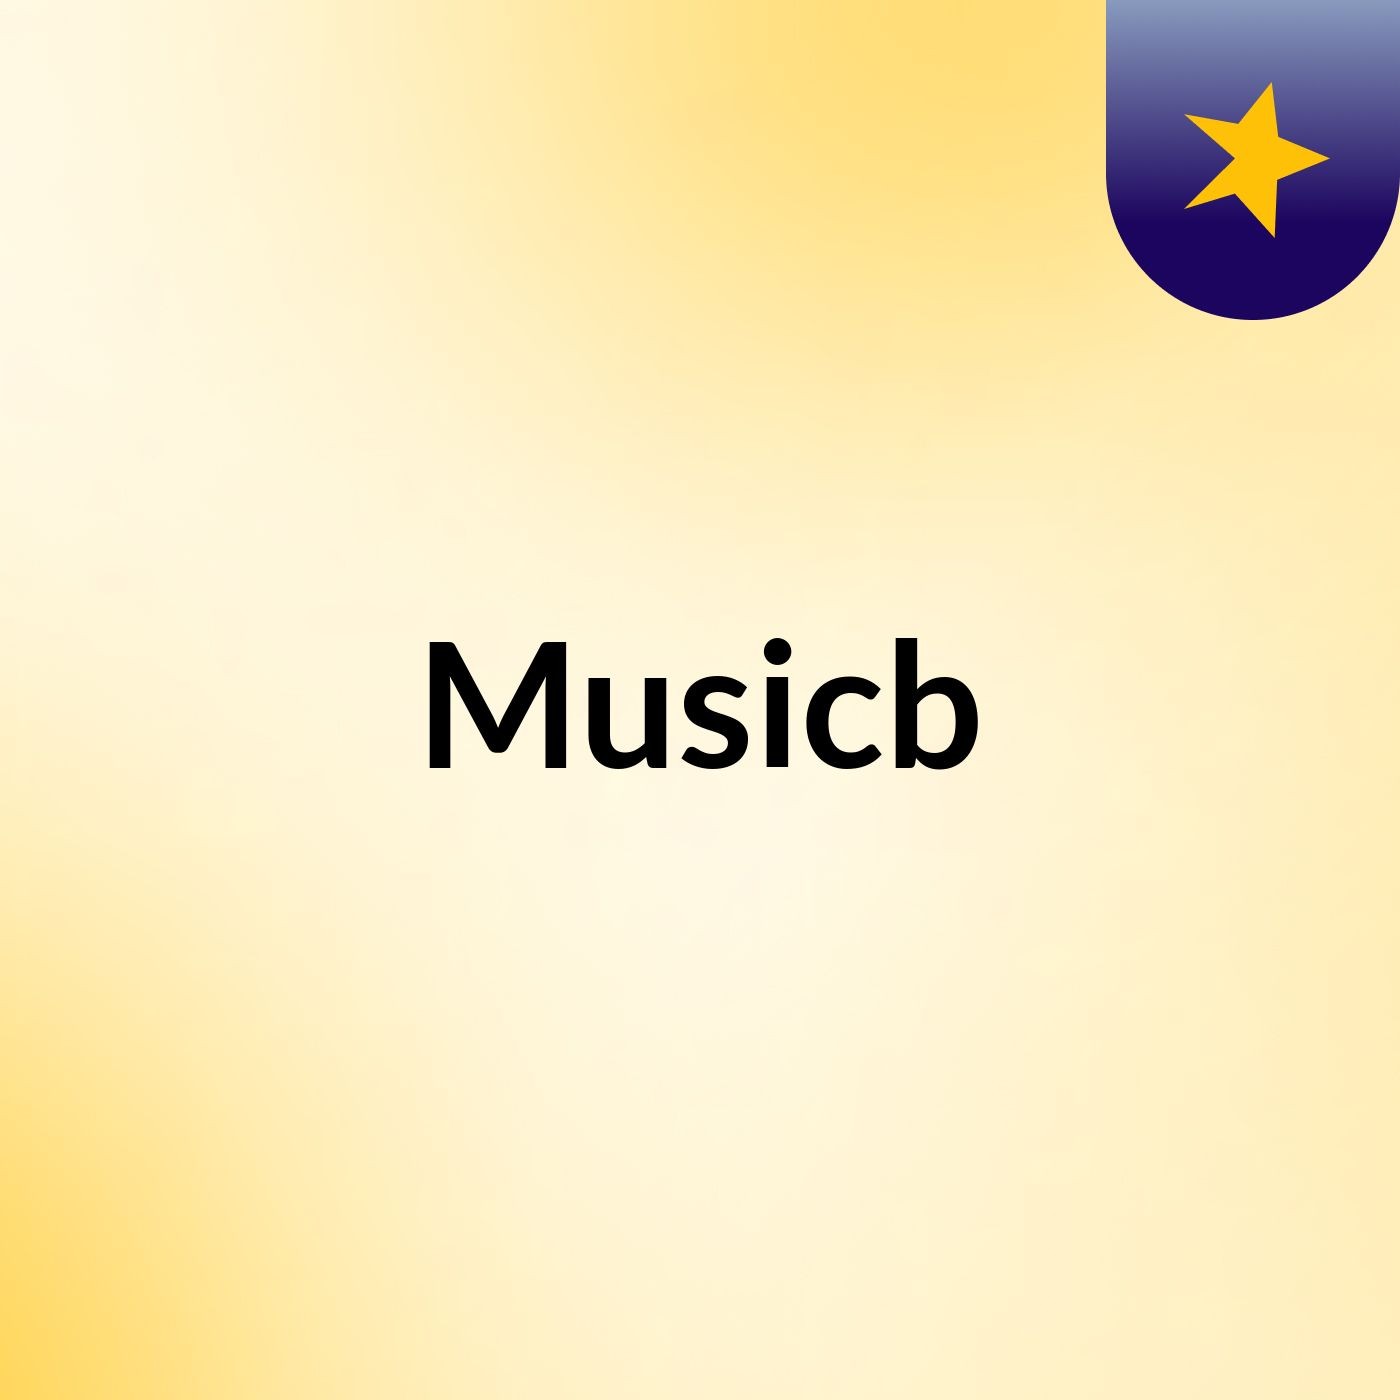 Musicb